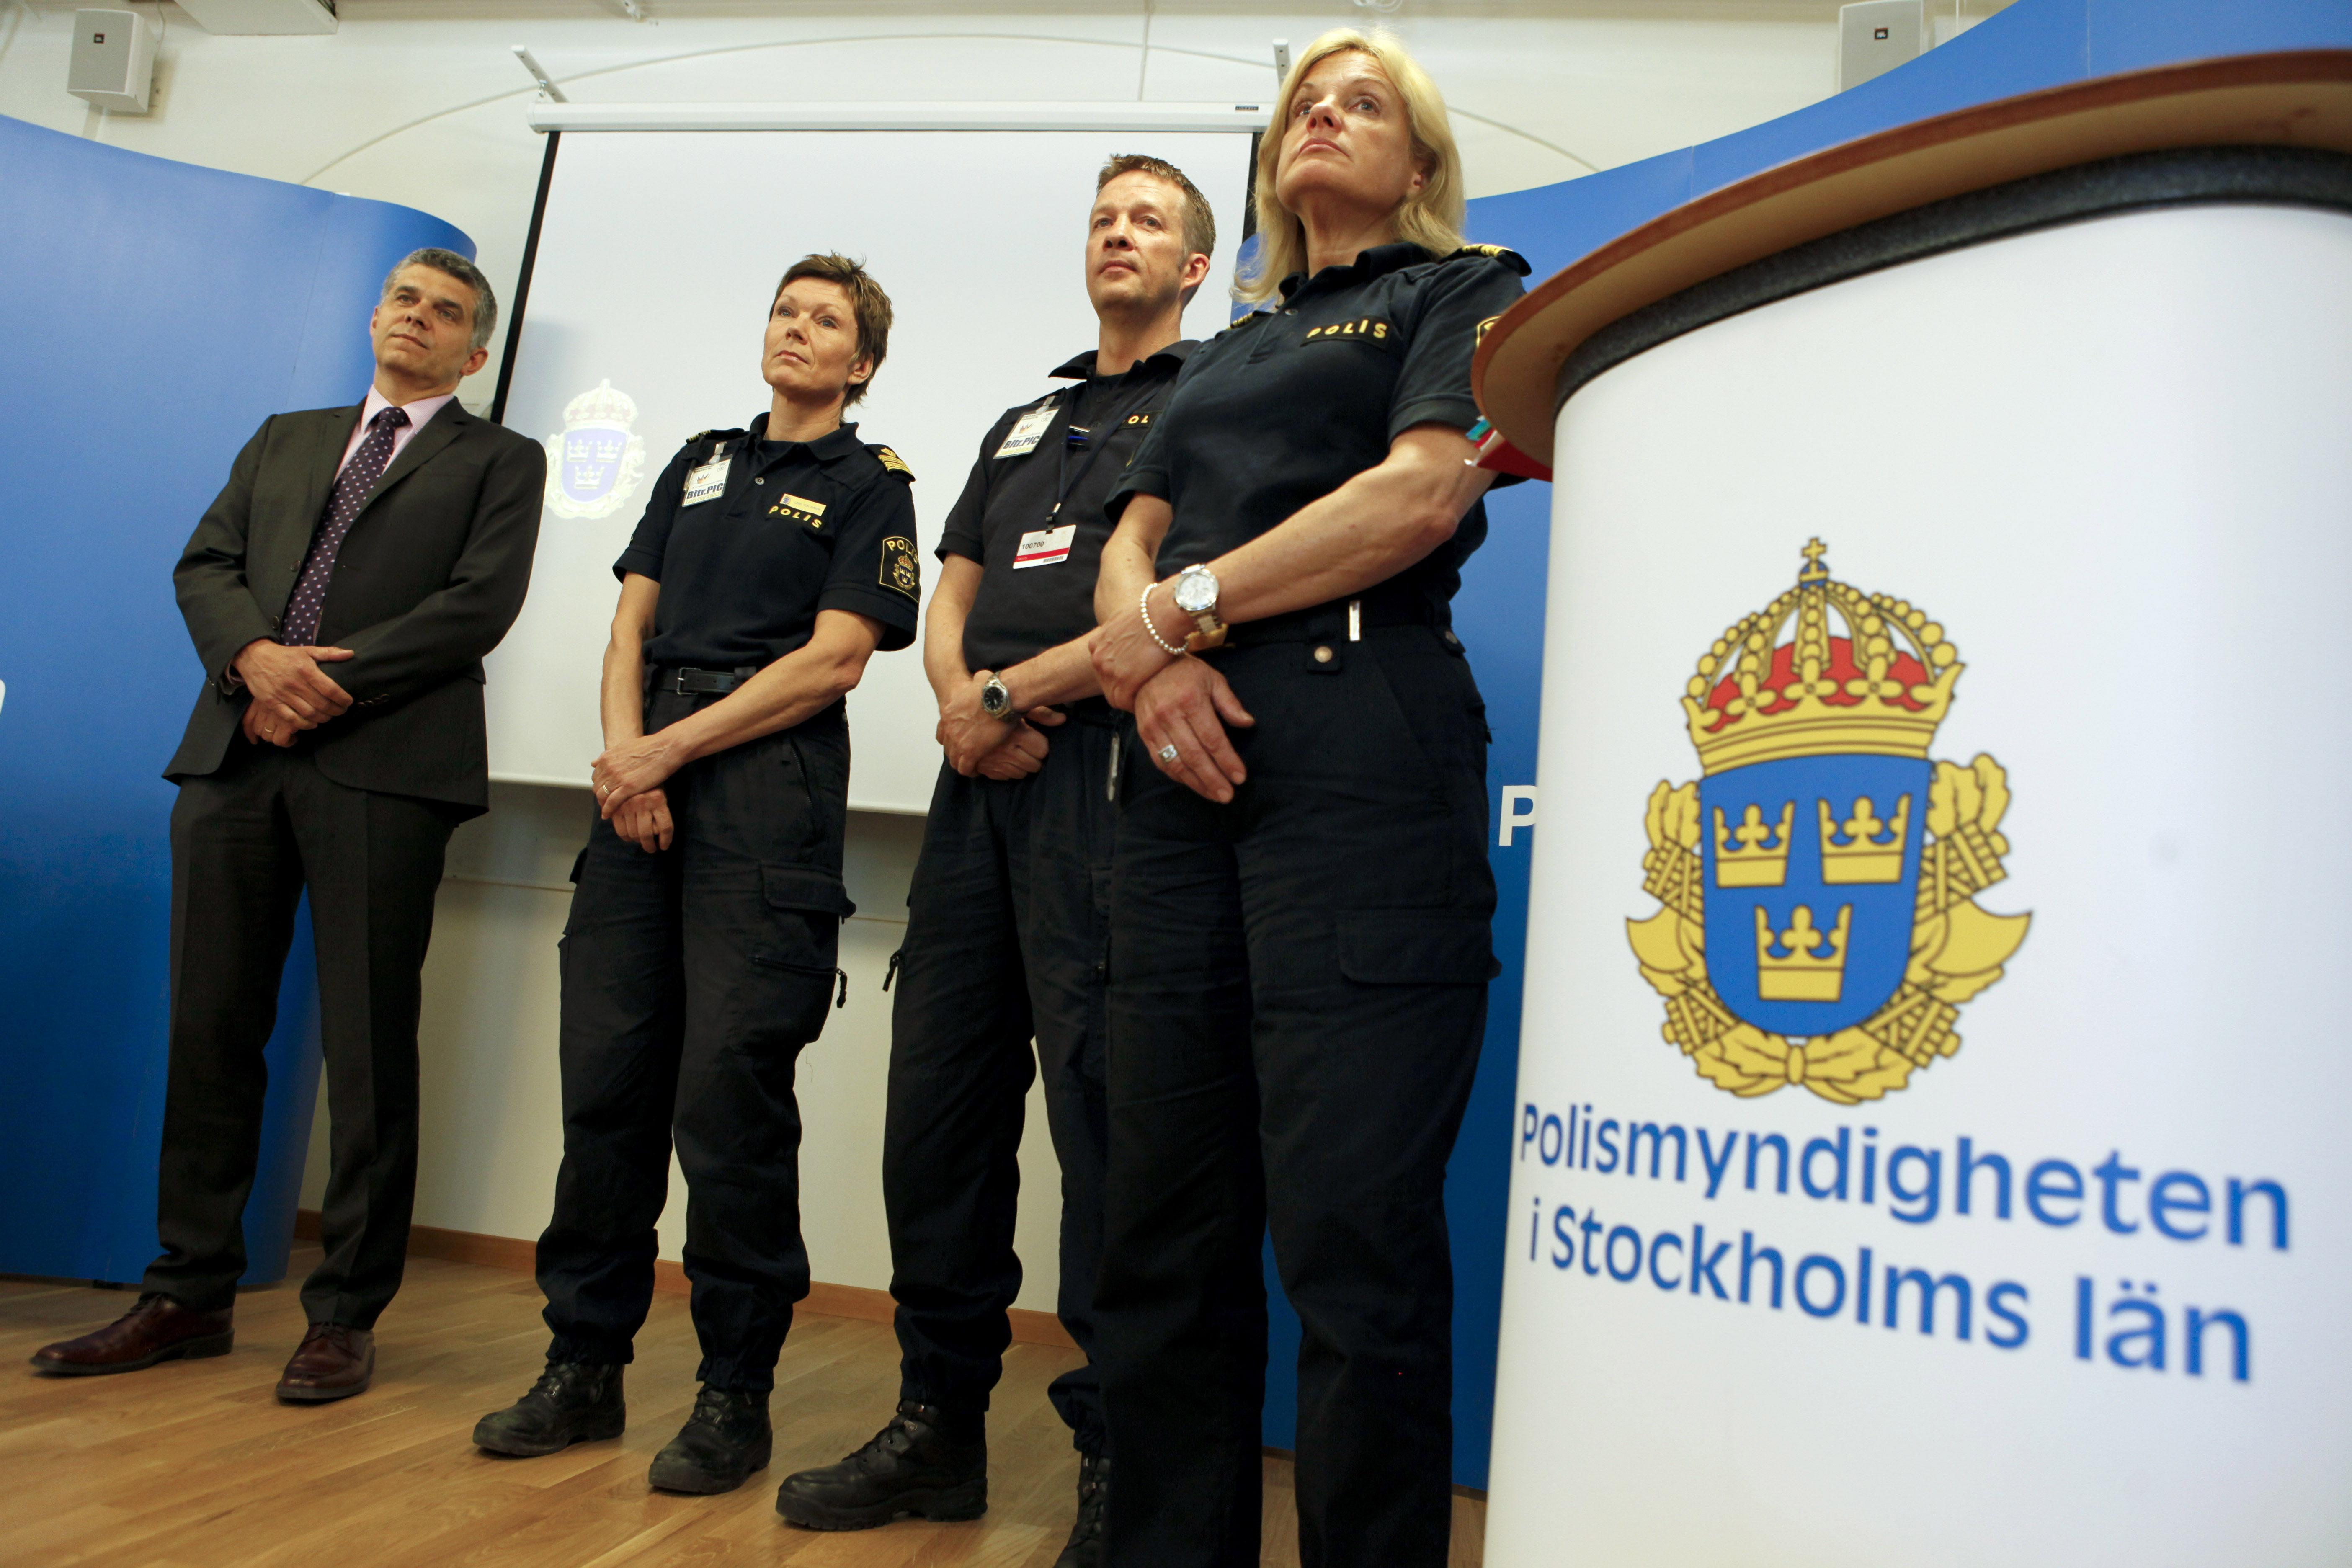 SDU, Ambassad, Surveillance Detection Unit, Stockholm, Spion, Brott och straff, Åklagare, USA, Spionage